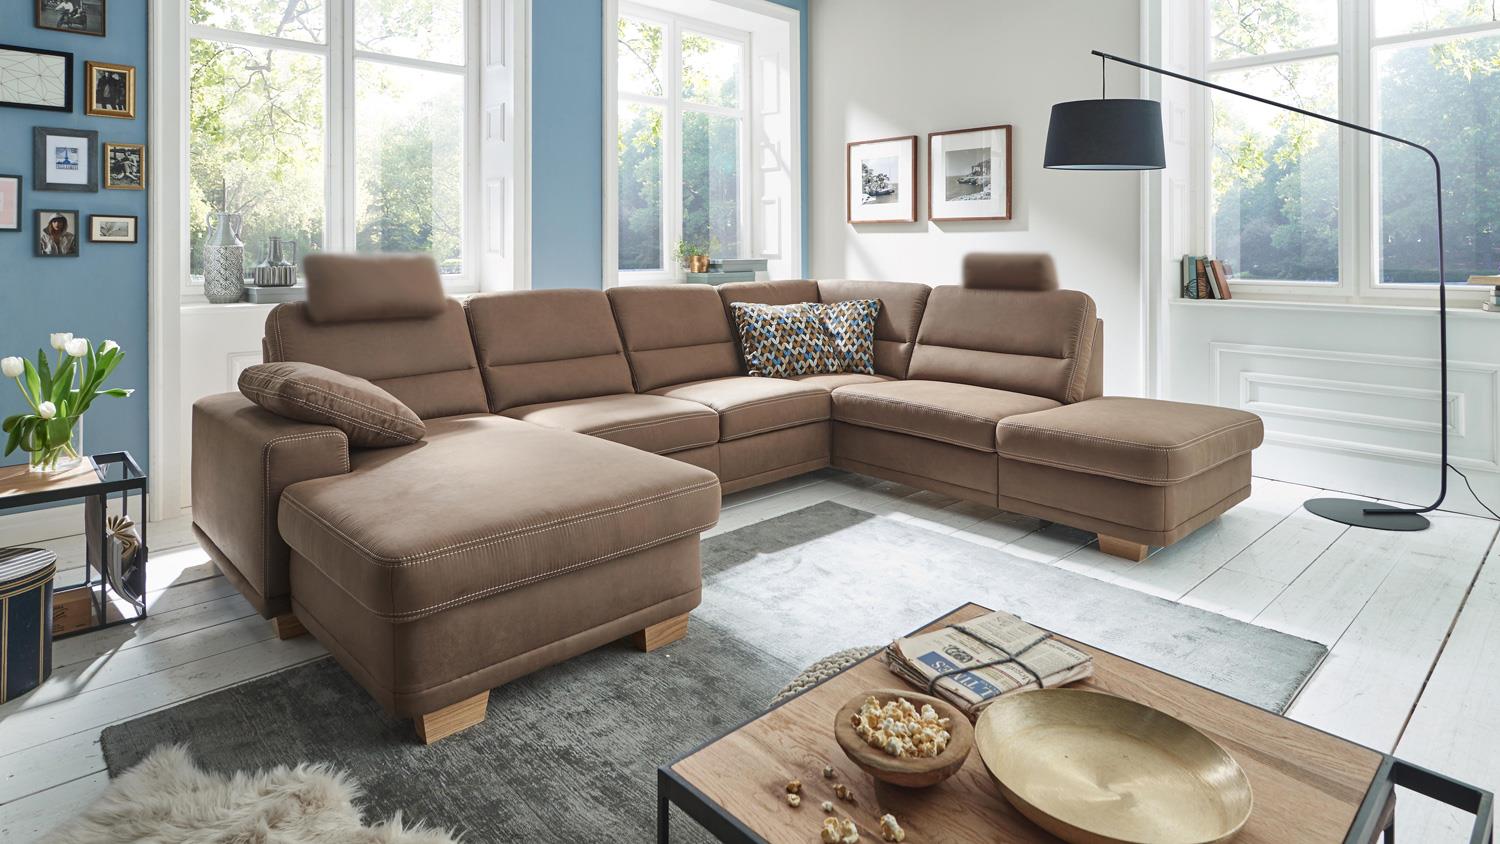 Durchschnittliche Nutzungsdauer Sofa